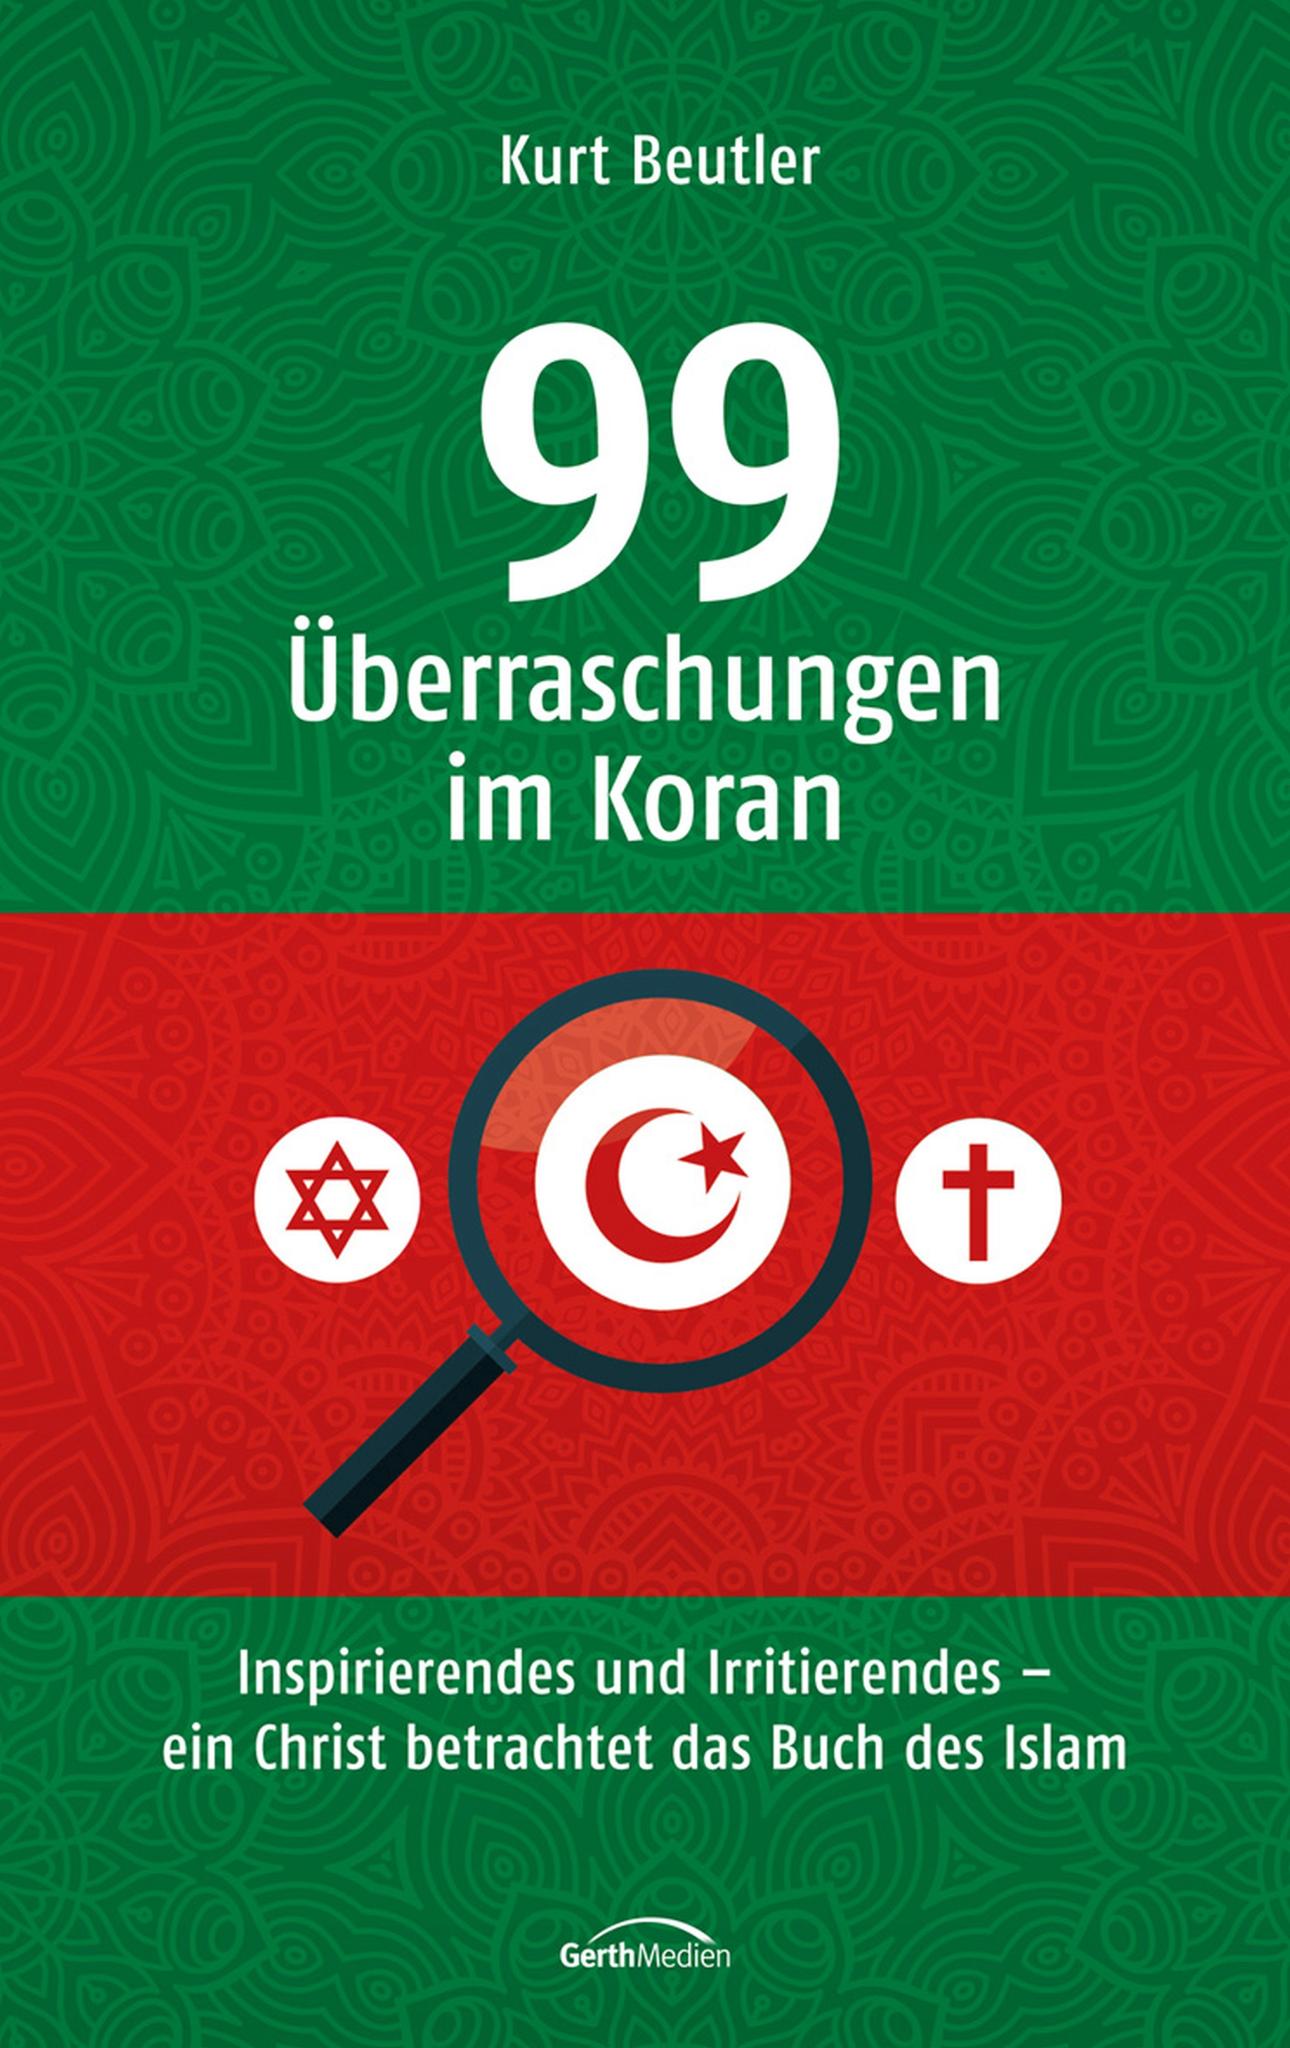 99 Überraschungen im Koran Inspirierendes und Irritierendes - ein Christ betrachtet das Buch des Islam.